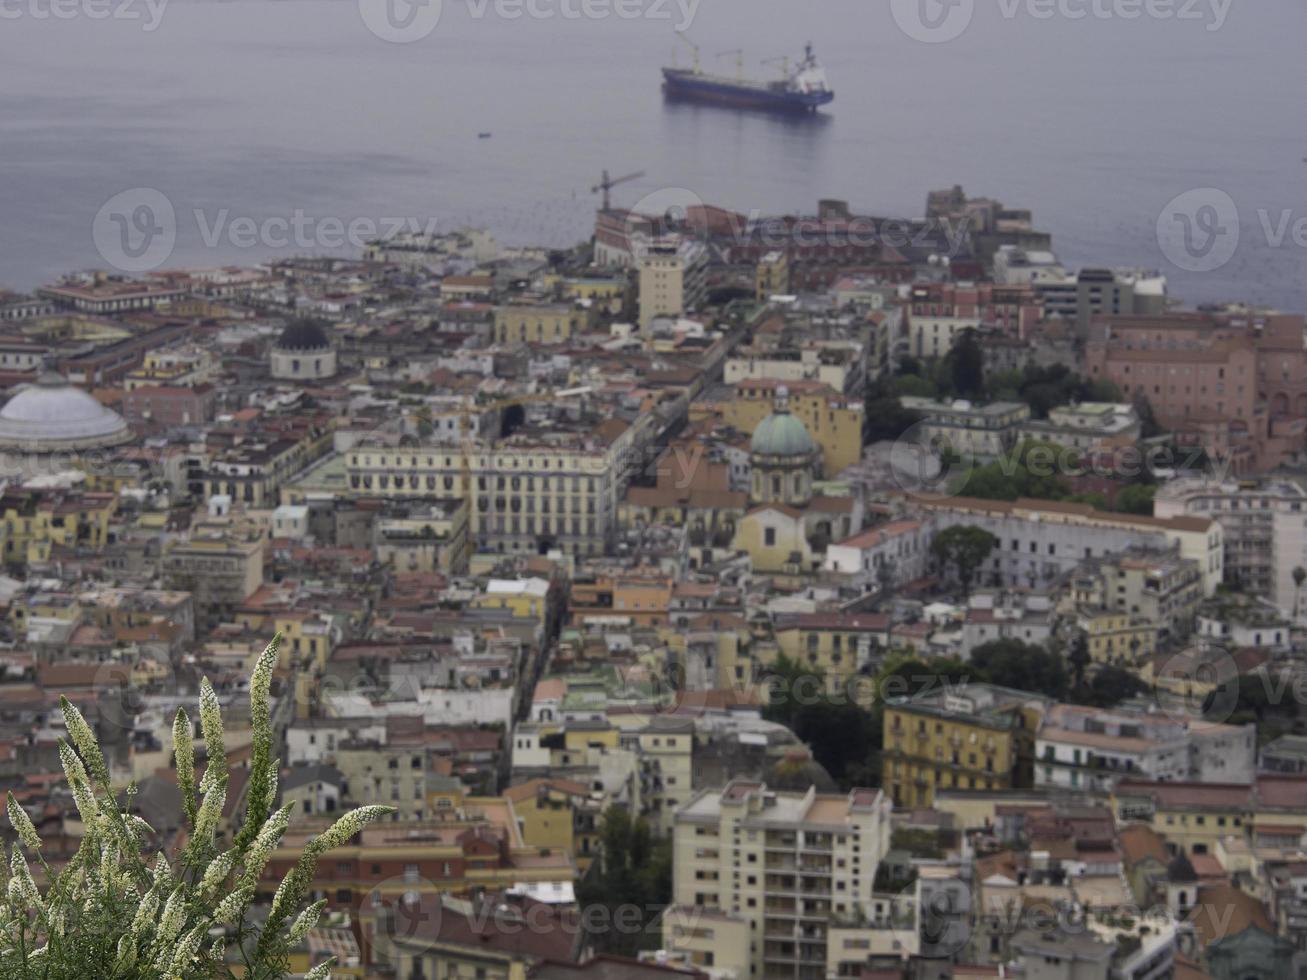 il città di Napoli foto